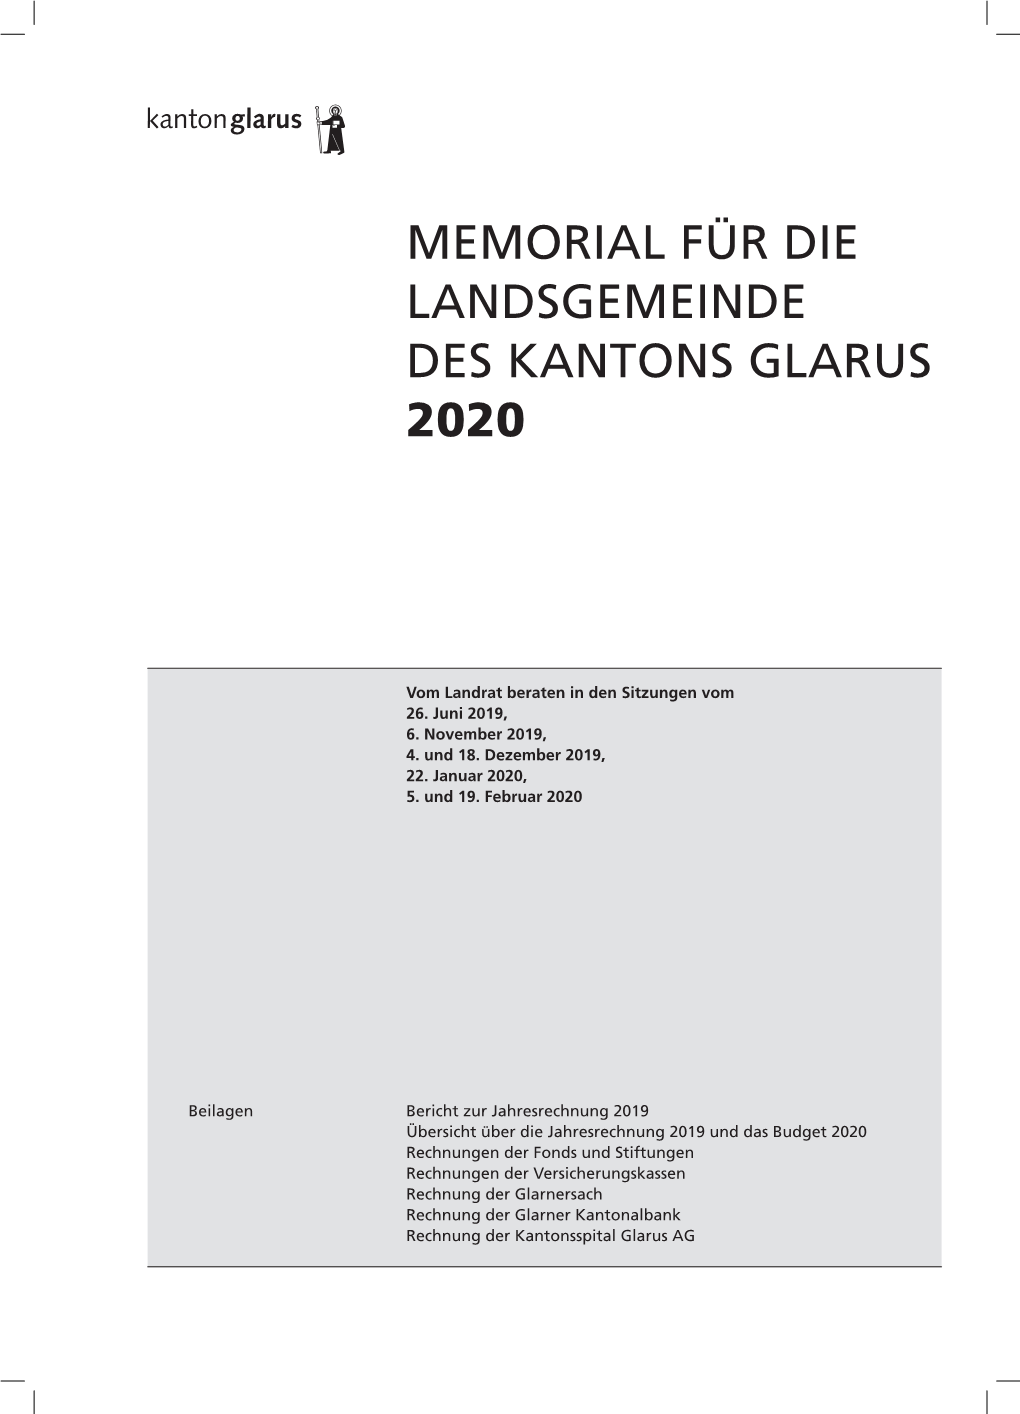 Memorial Für Die Landsgemeinde 2020